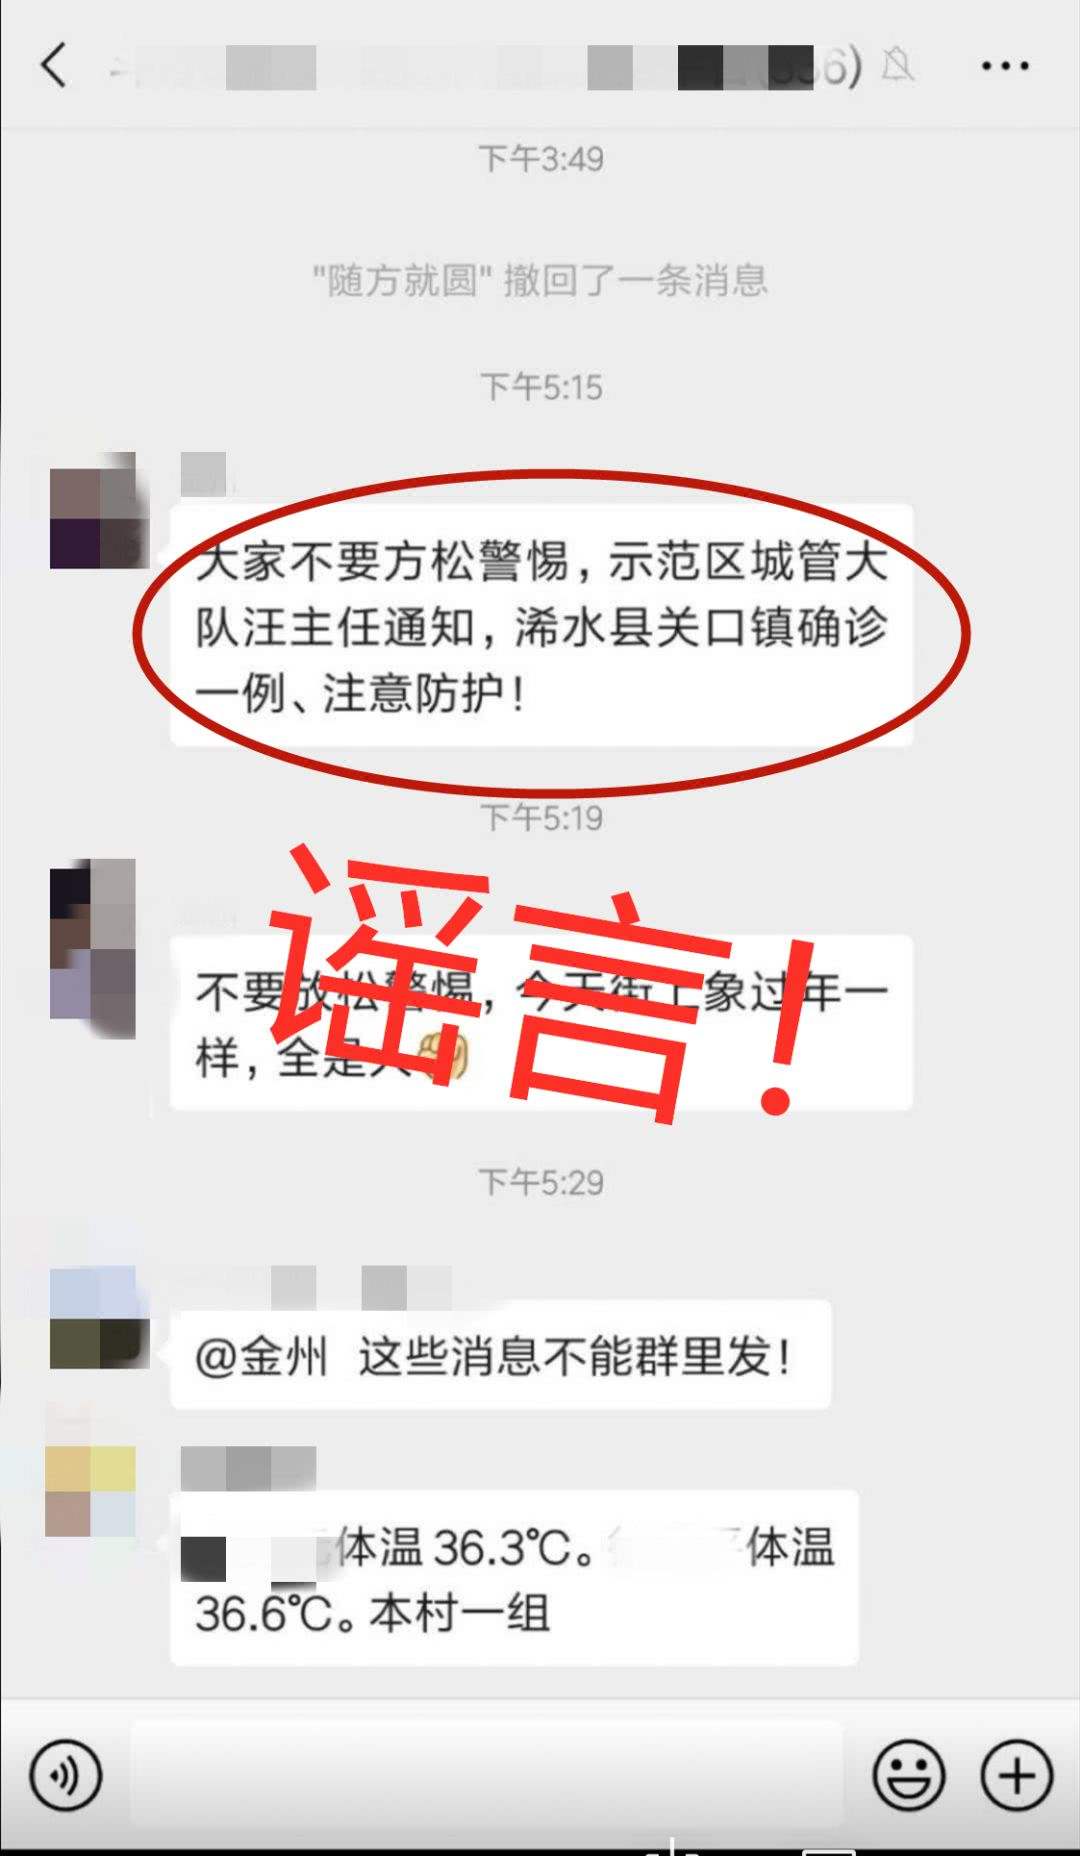 关于北大妇儿医院继续挂号找黄牛；广州疫情病毒传播时间缩短到1天，会封城吗?的信息